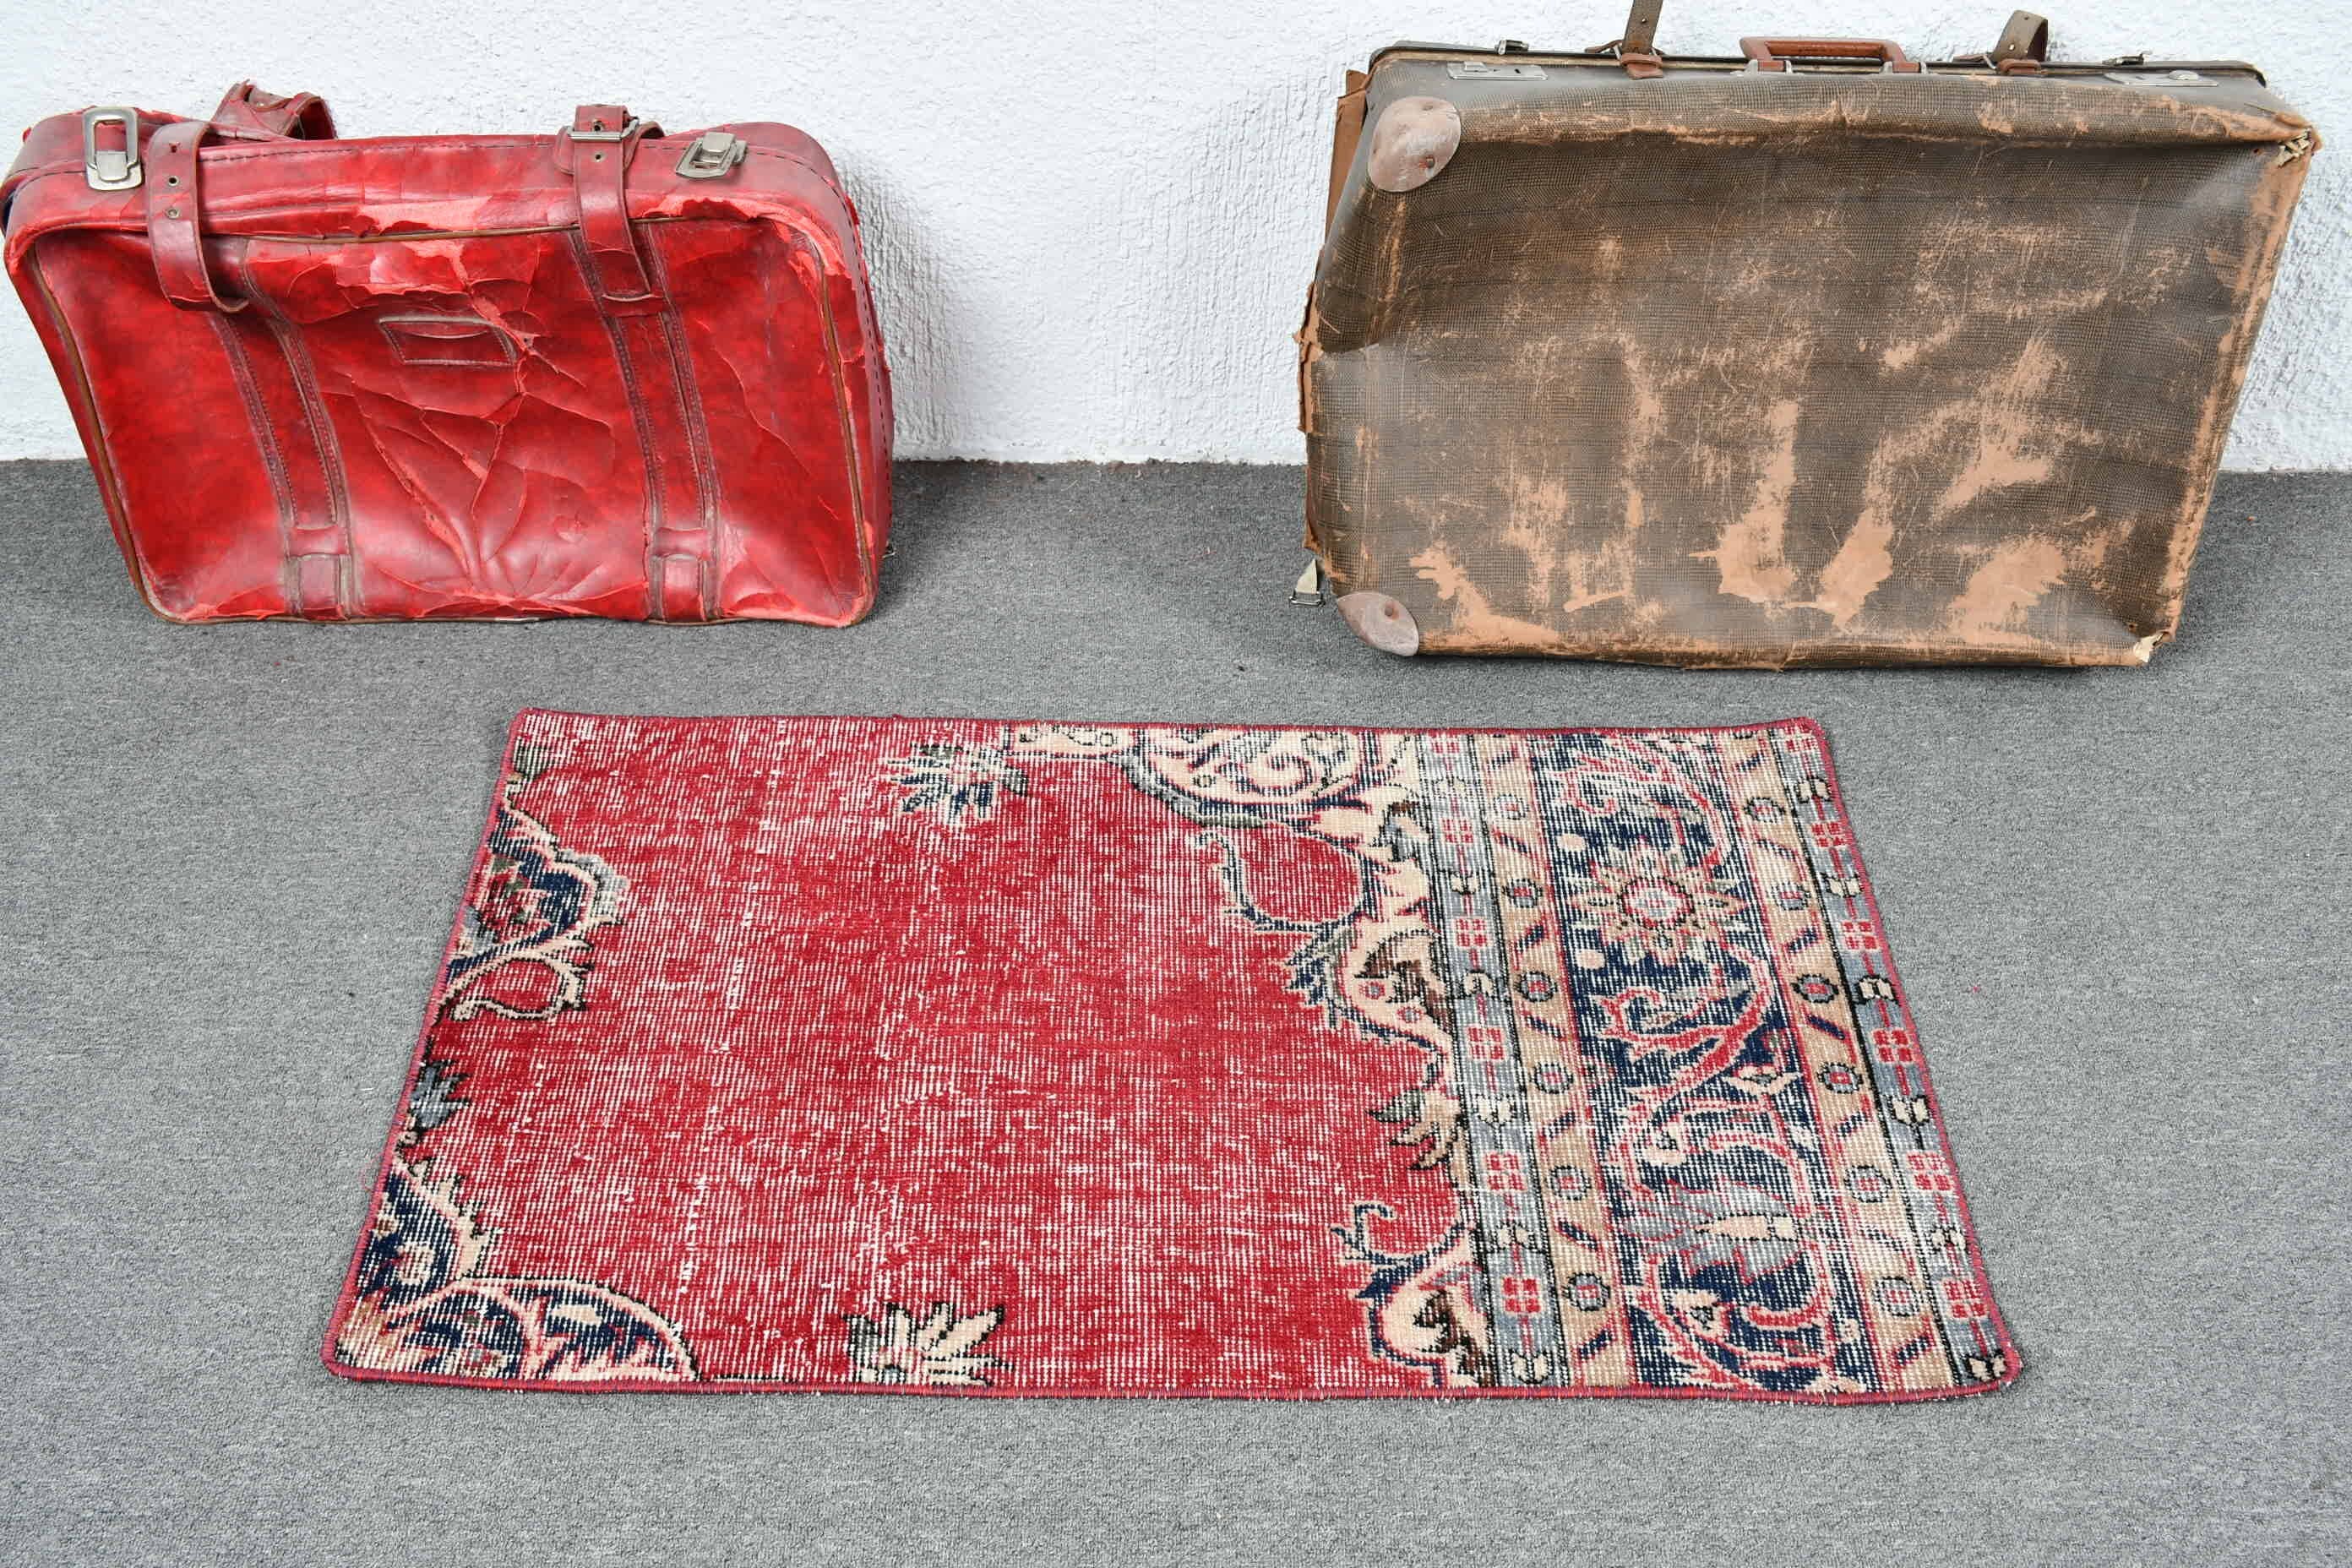 Vintage Rug, Door Mat Rugs, Art Rug, Antique Rug, Red Cool Rug, 2x3.6 ft Small Rugs, Entry Rug, Turkish Rugs, Floor Rugs, Rugs for Bedroom